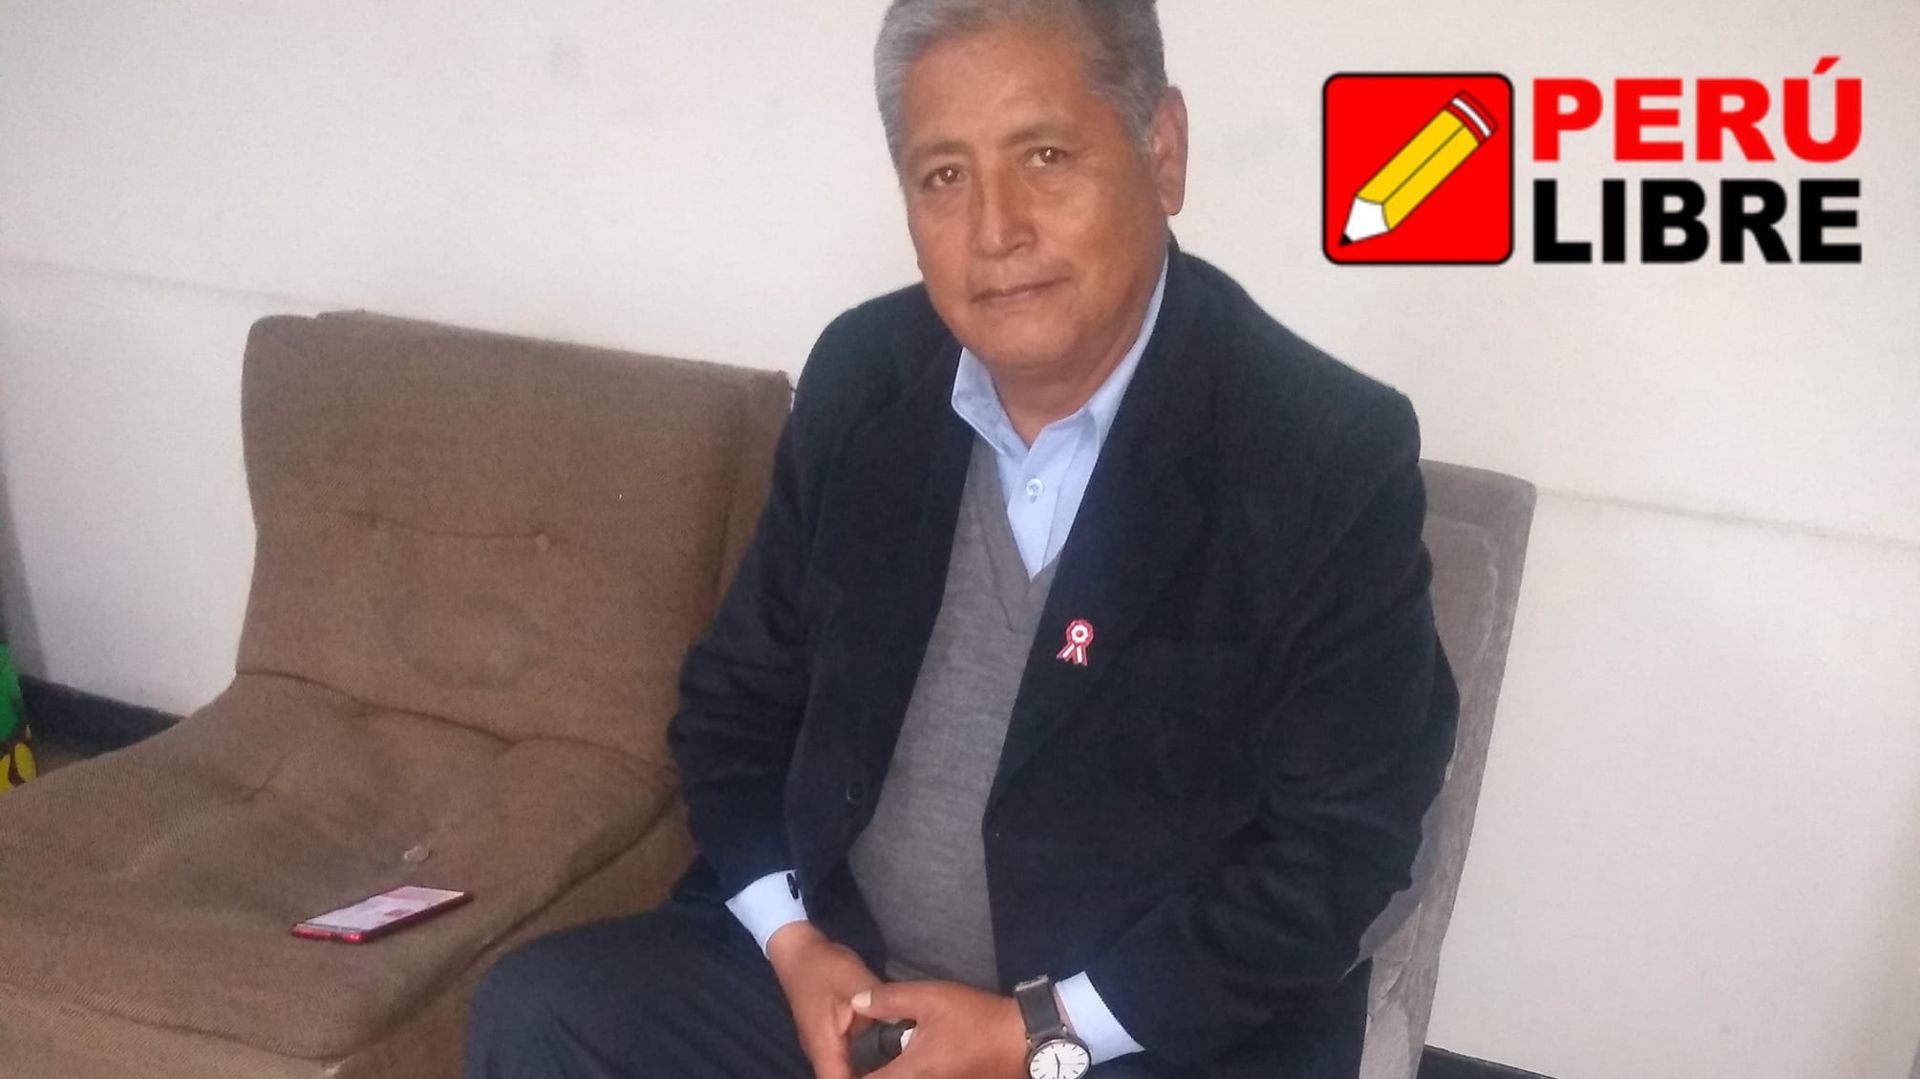 Isaac Mita, accesitario de Betssy Chávez, se sumará a la bancada de Perú Libre: “Es un partido serio”